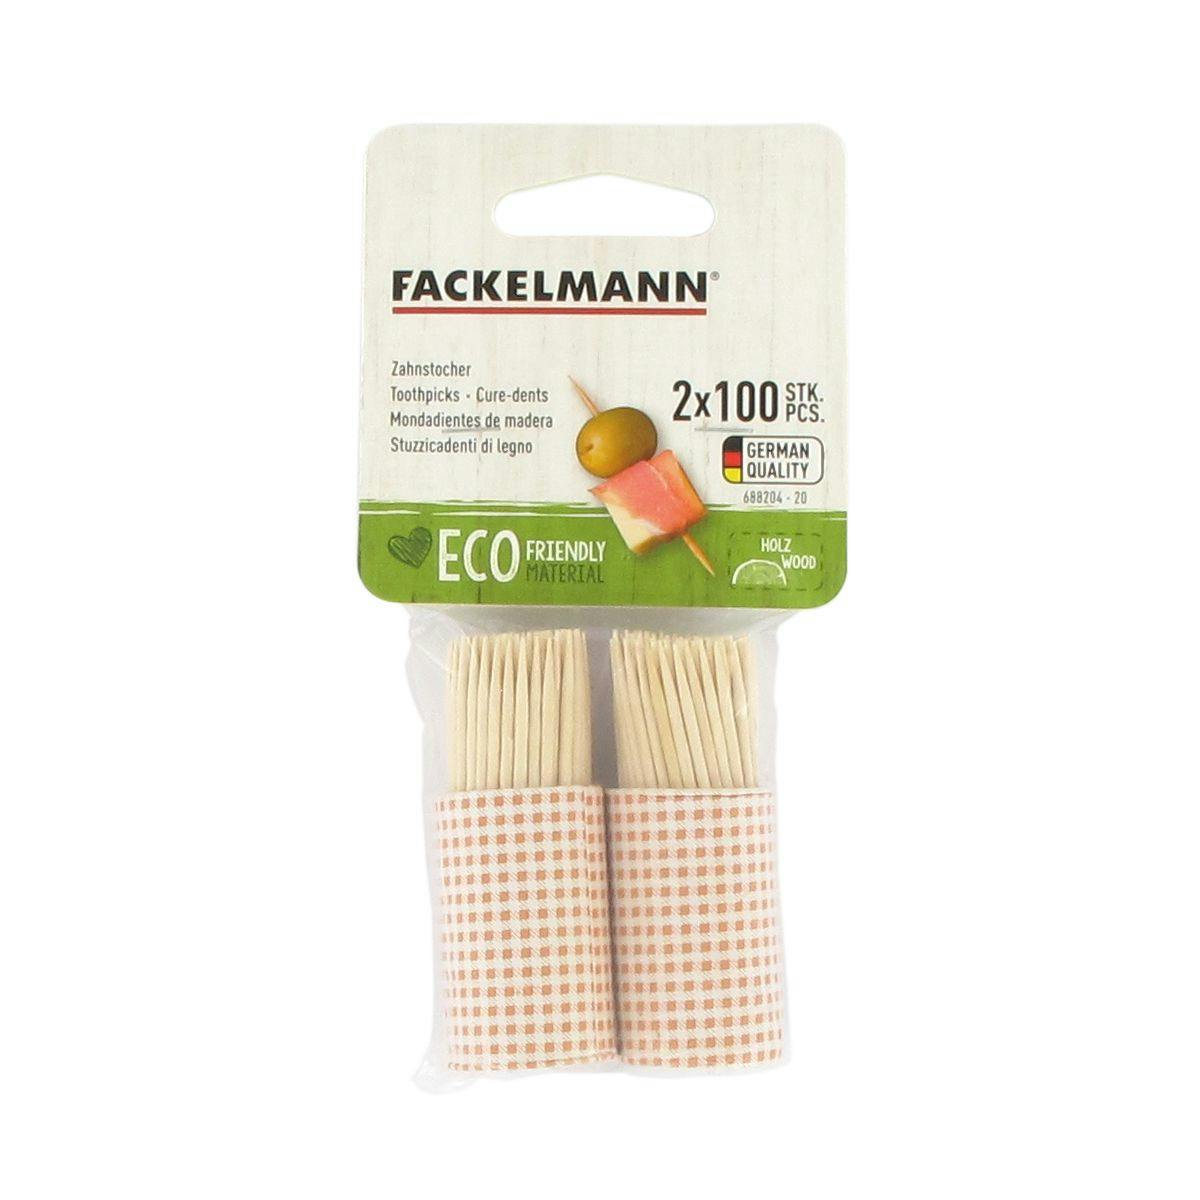 FACKELMANN Piques en bois pour brochettes de 25 cm eco friendly x50